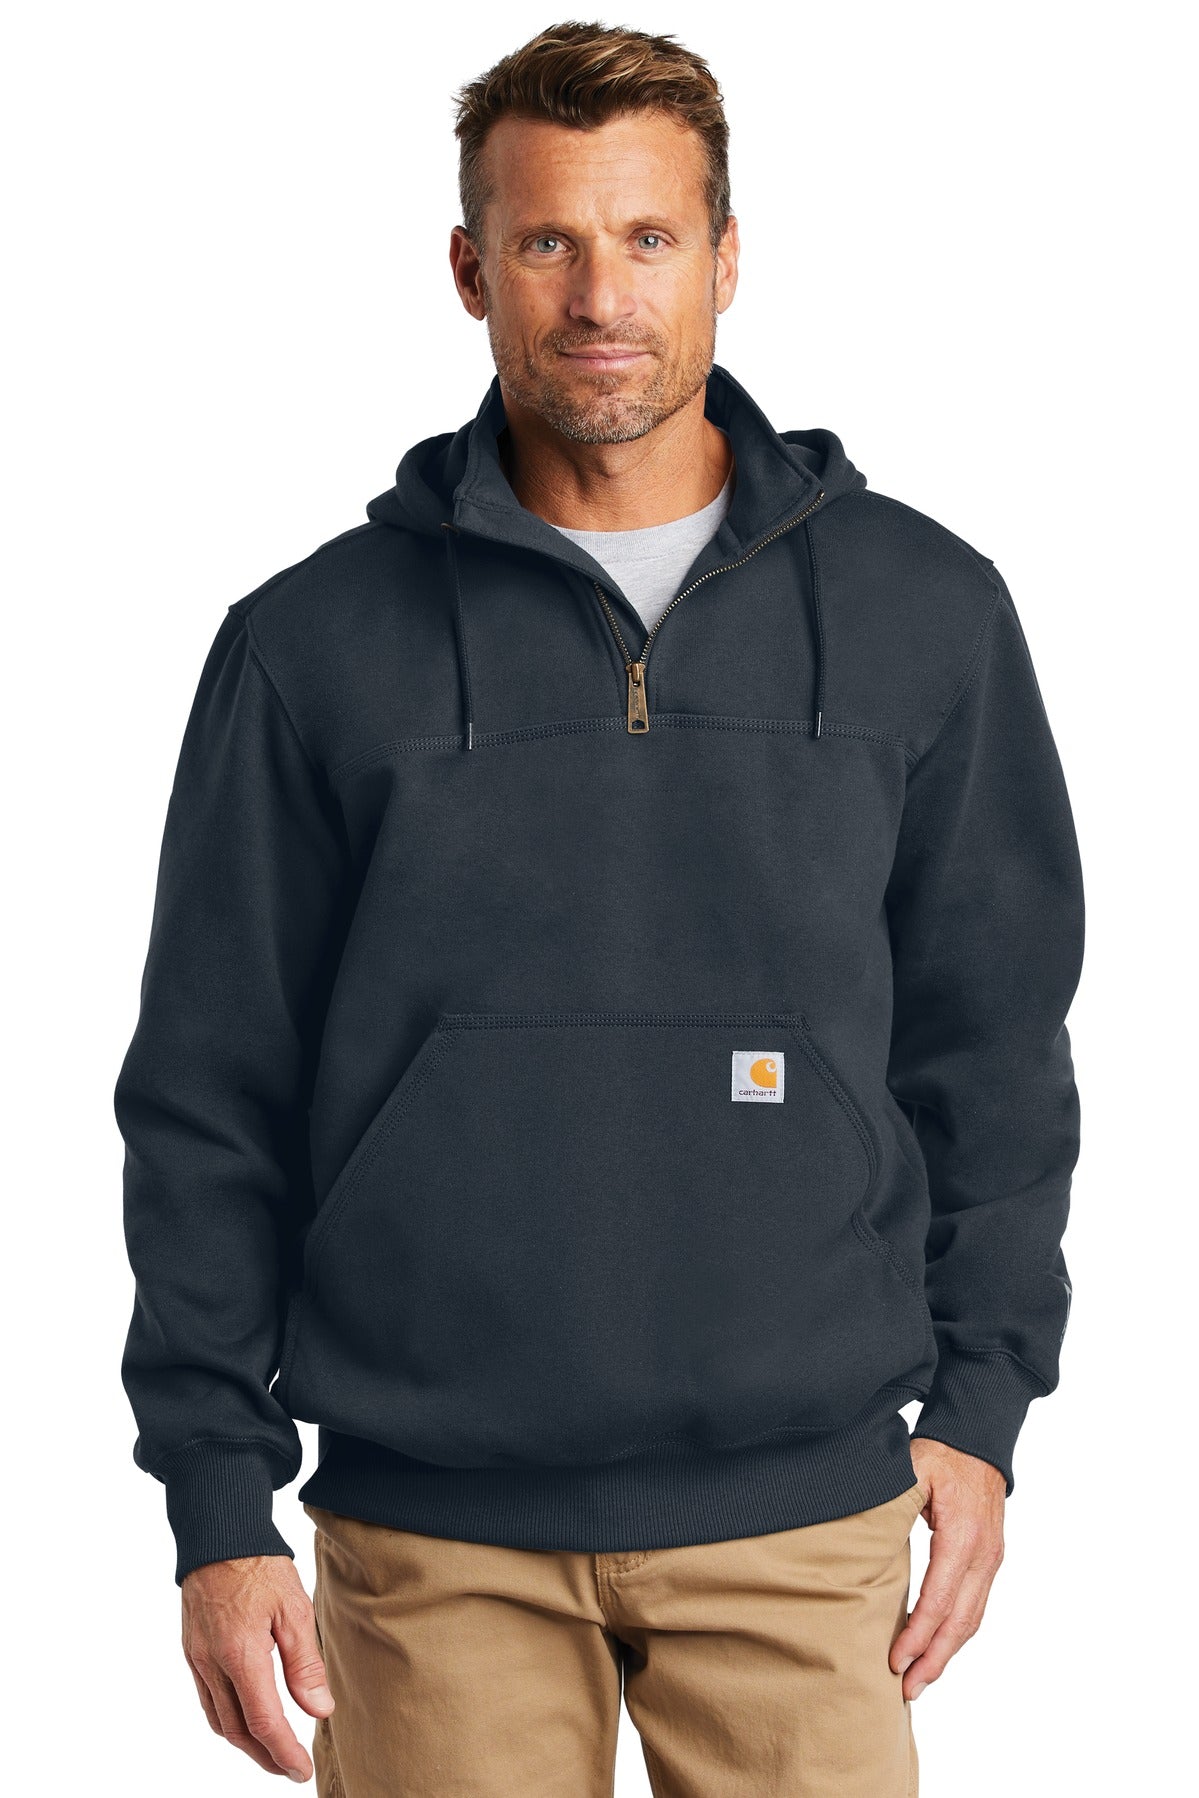 Sweatshirts/Fleece New Navy Carhartt